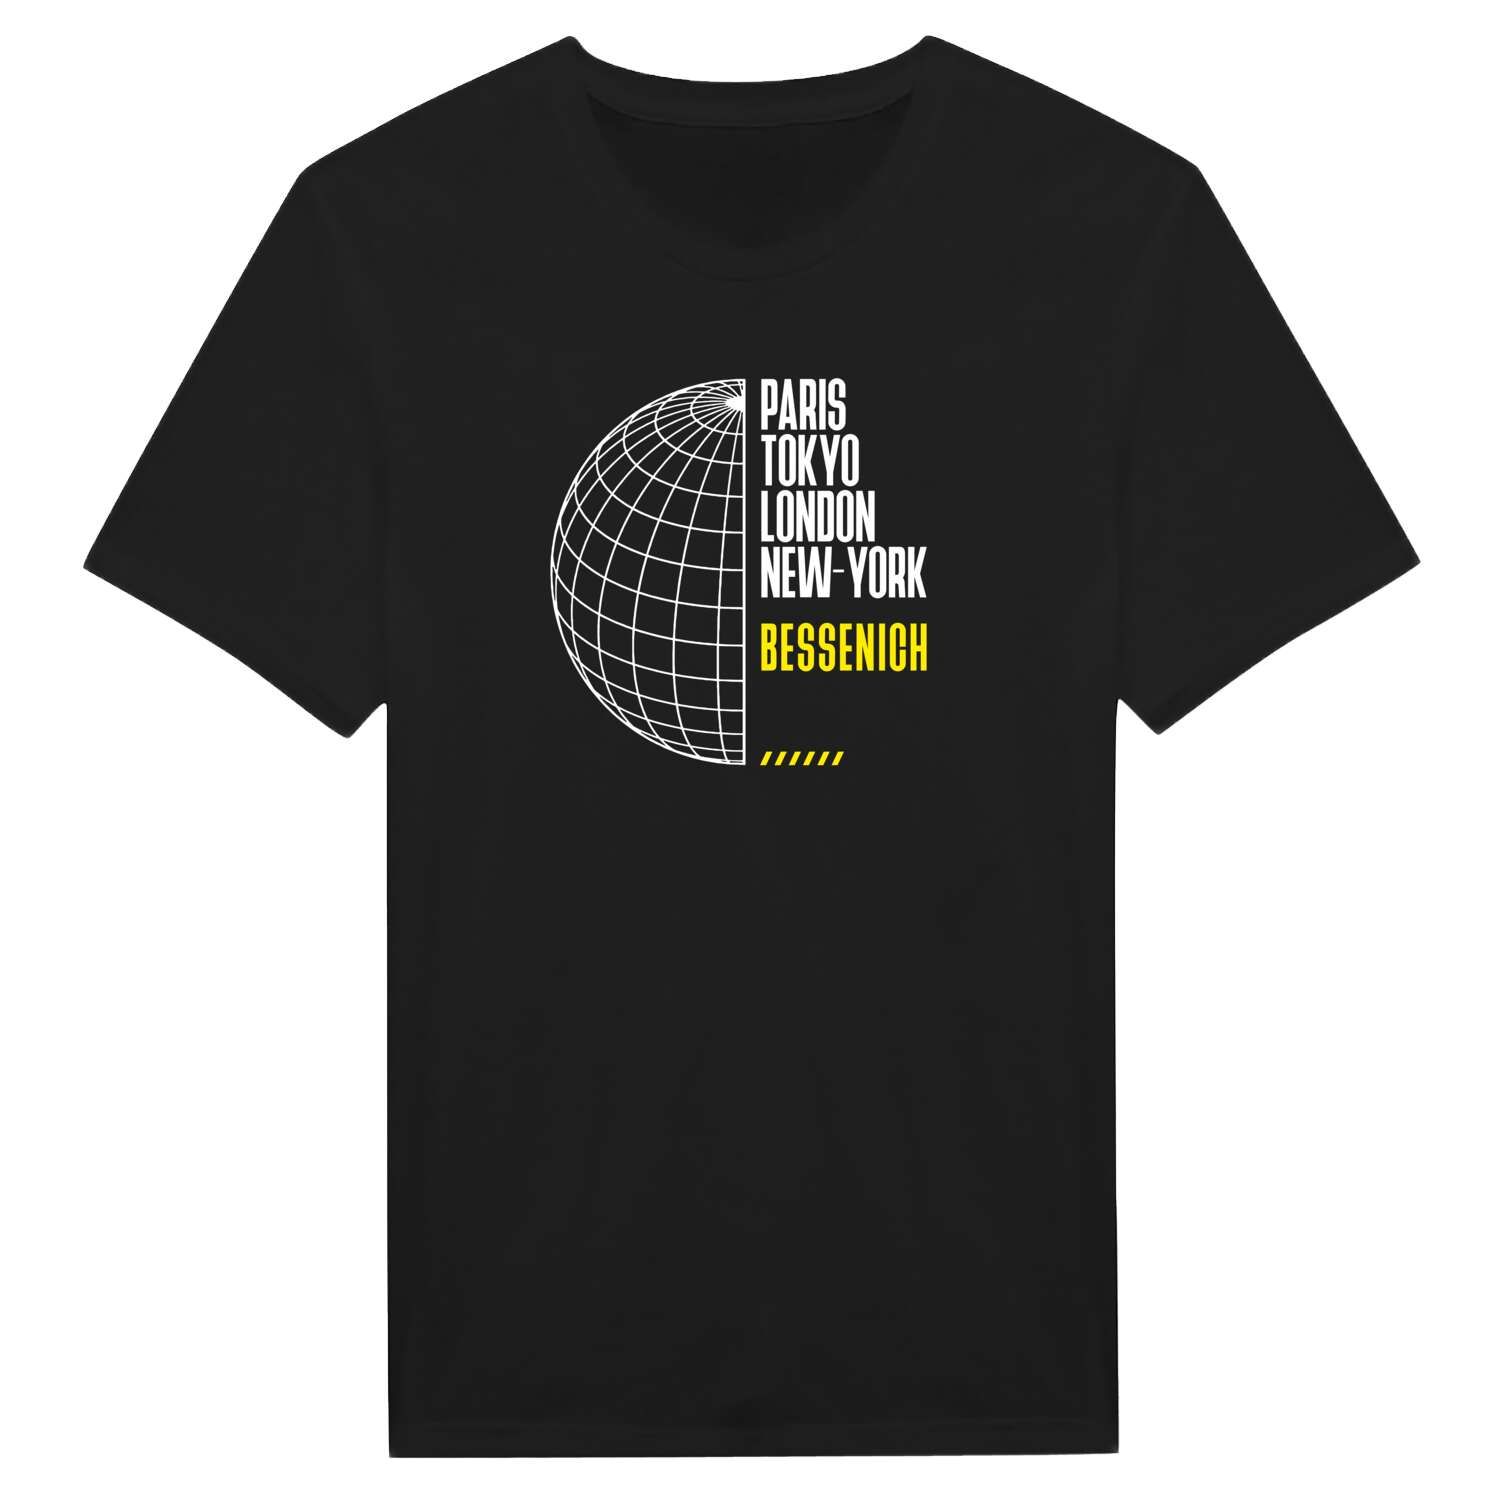 Bessenich T-Shirt »Paris Tokyo London«